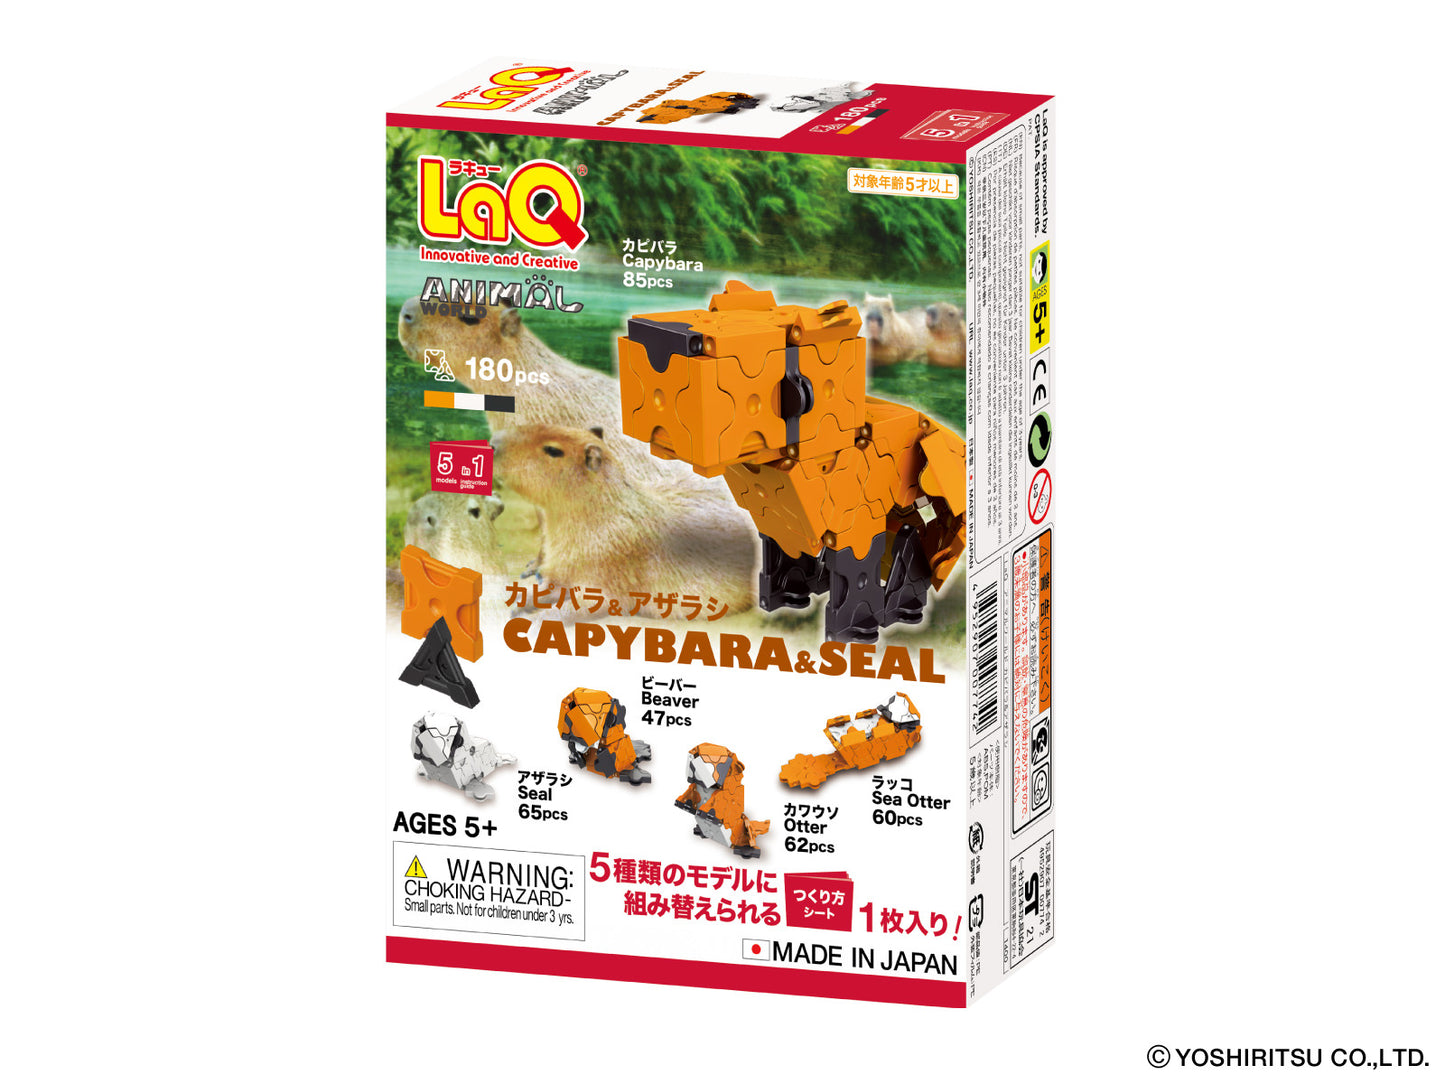 LaQ Animal World Capybara and Seal